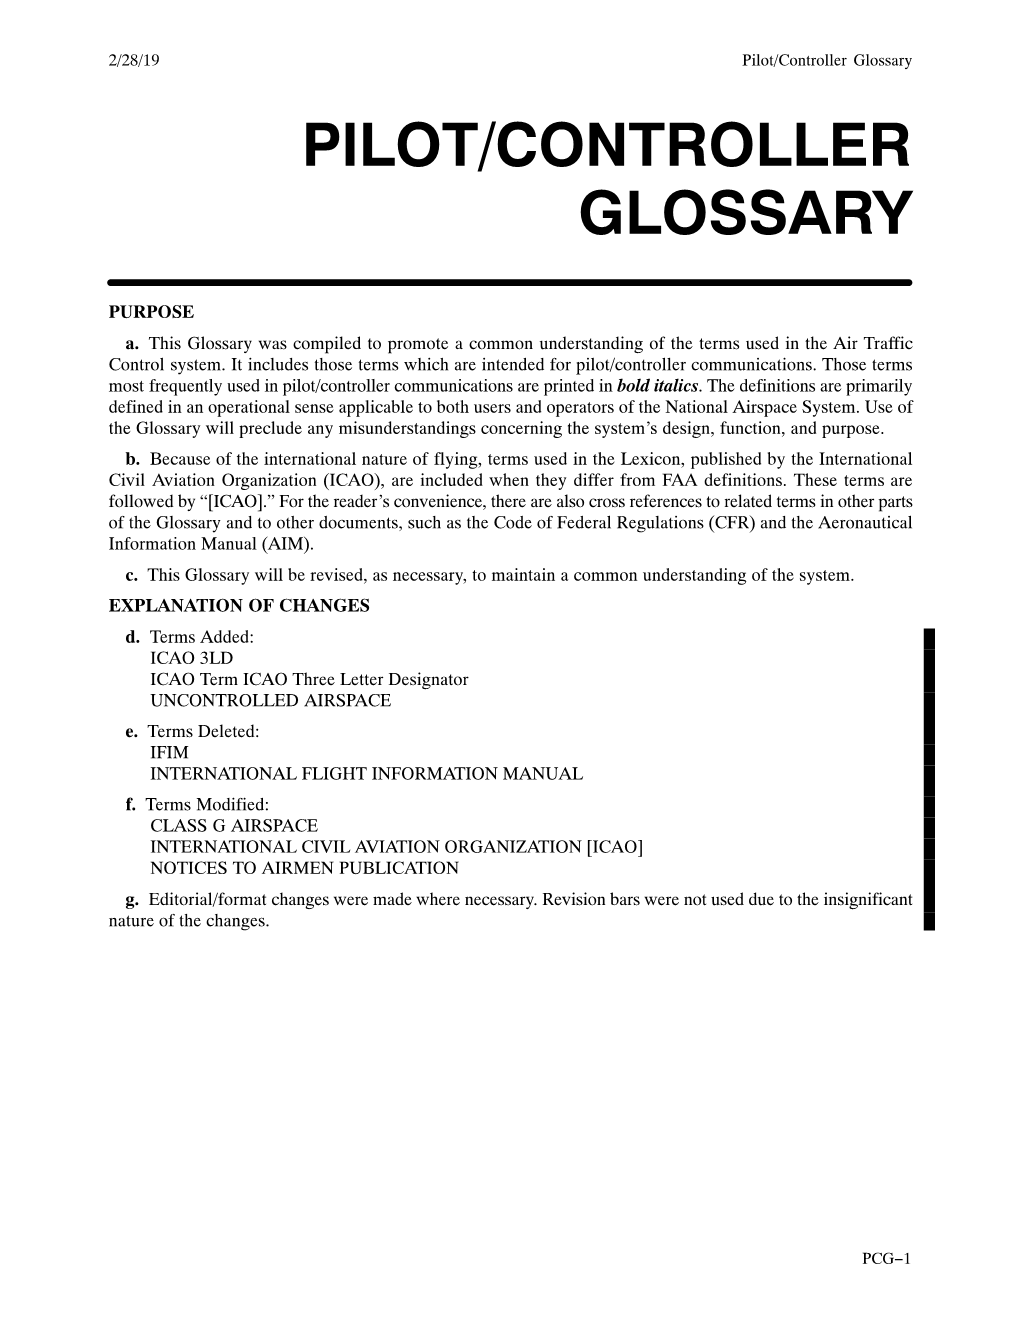 Pilot/Controller Glossary PILOT/CONTROLLER GLOSSARY